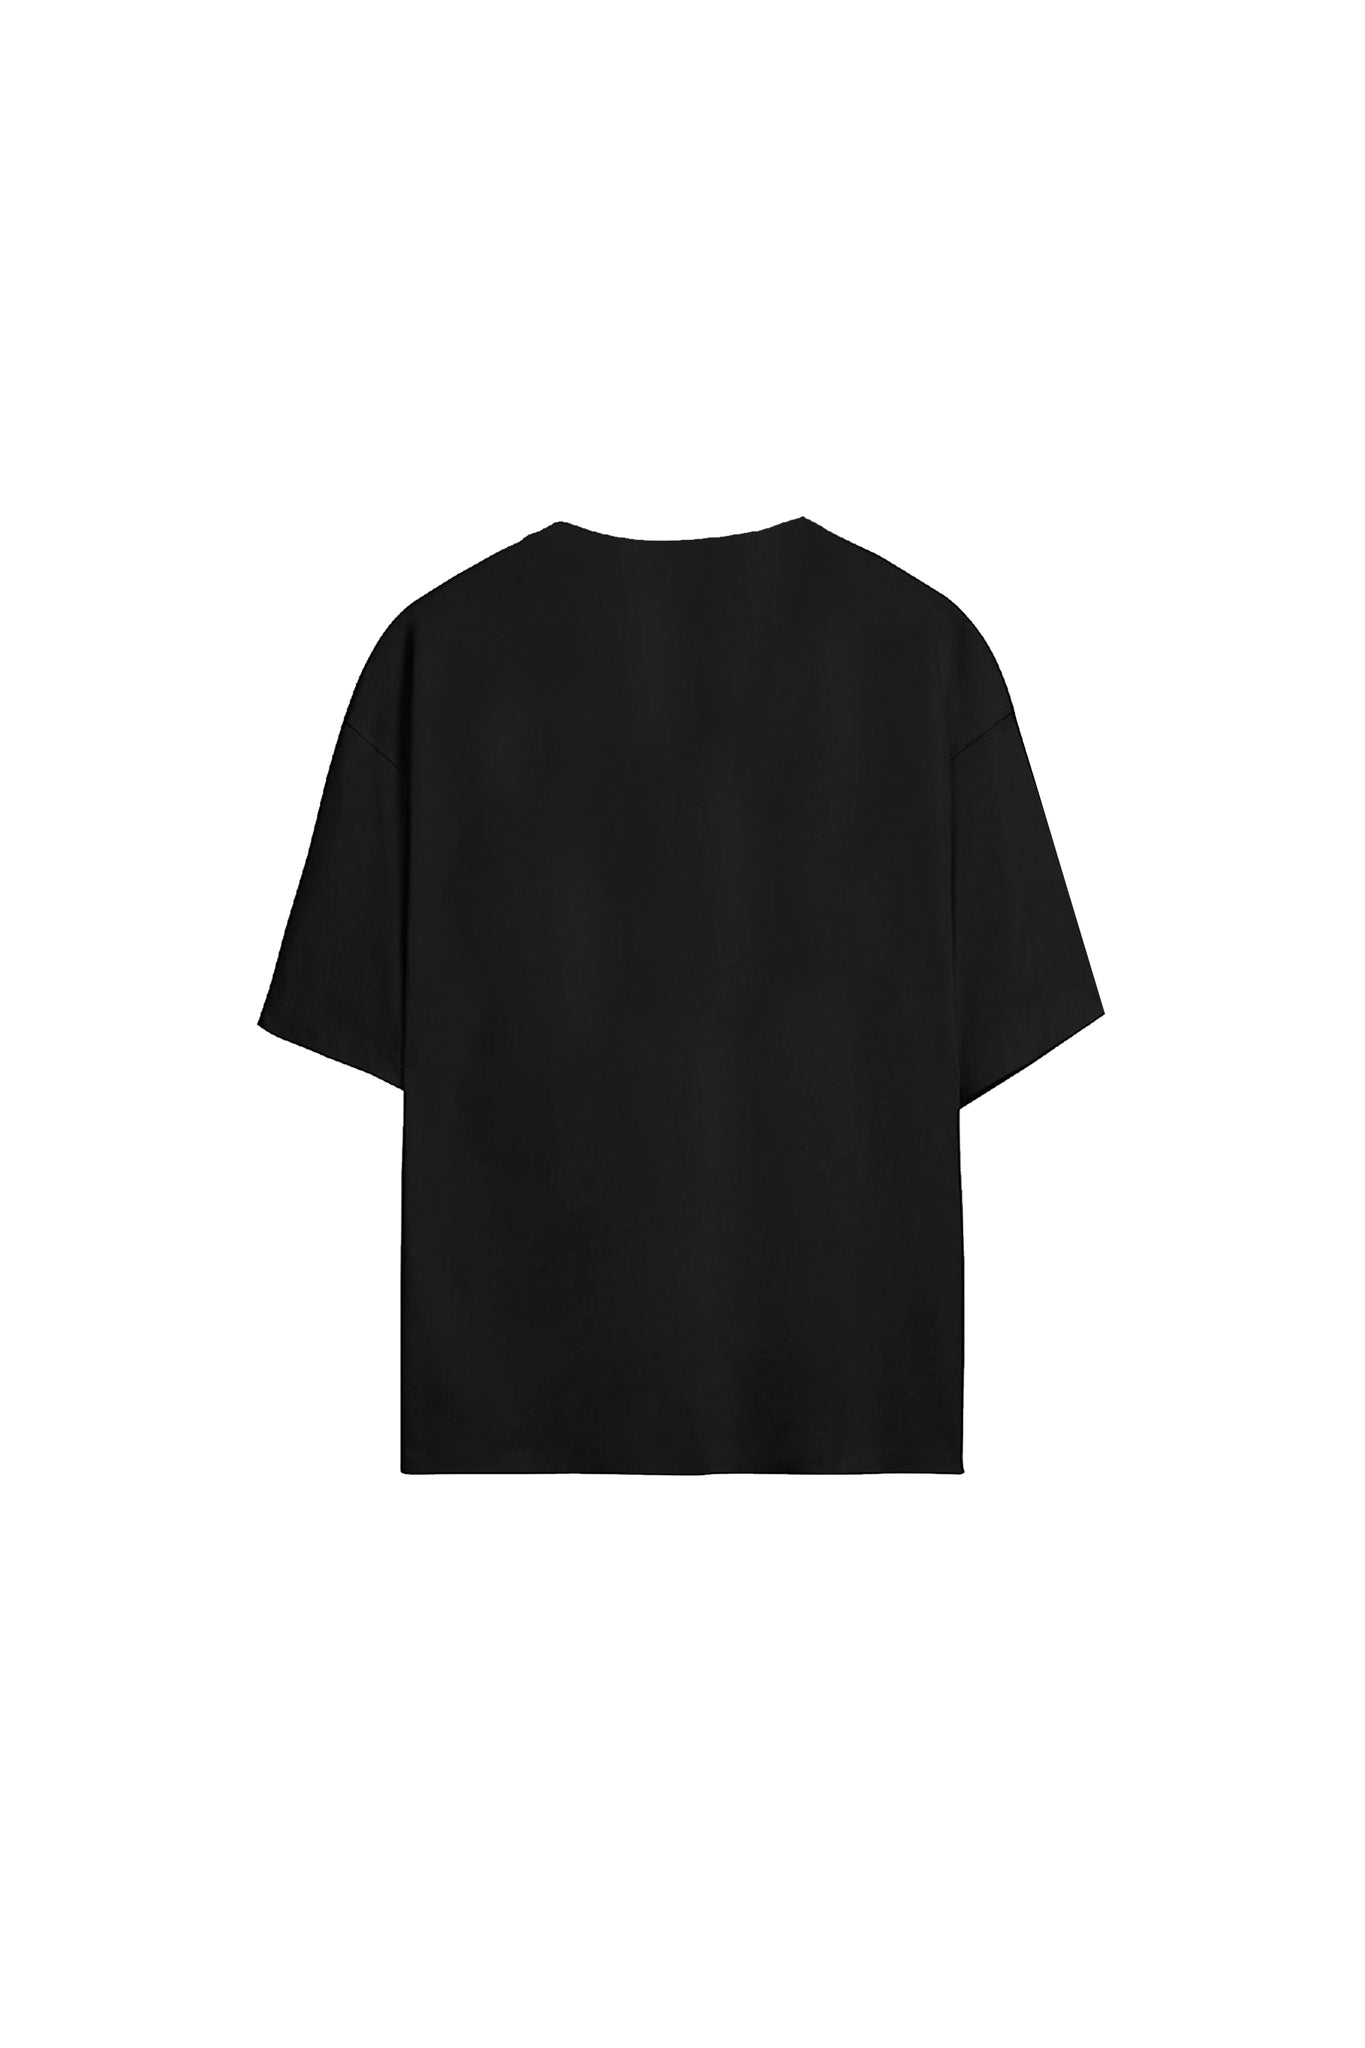 “BADINFLUENCE” Easy Black Over T-Shirt